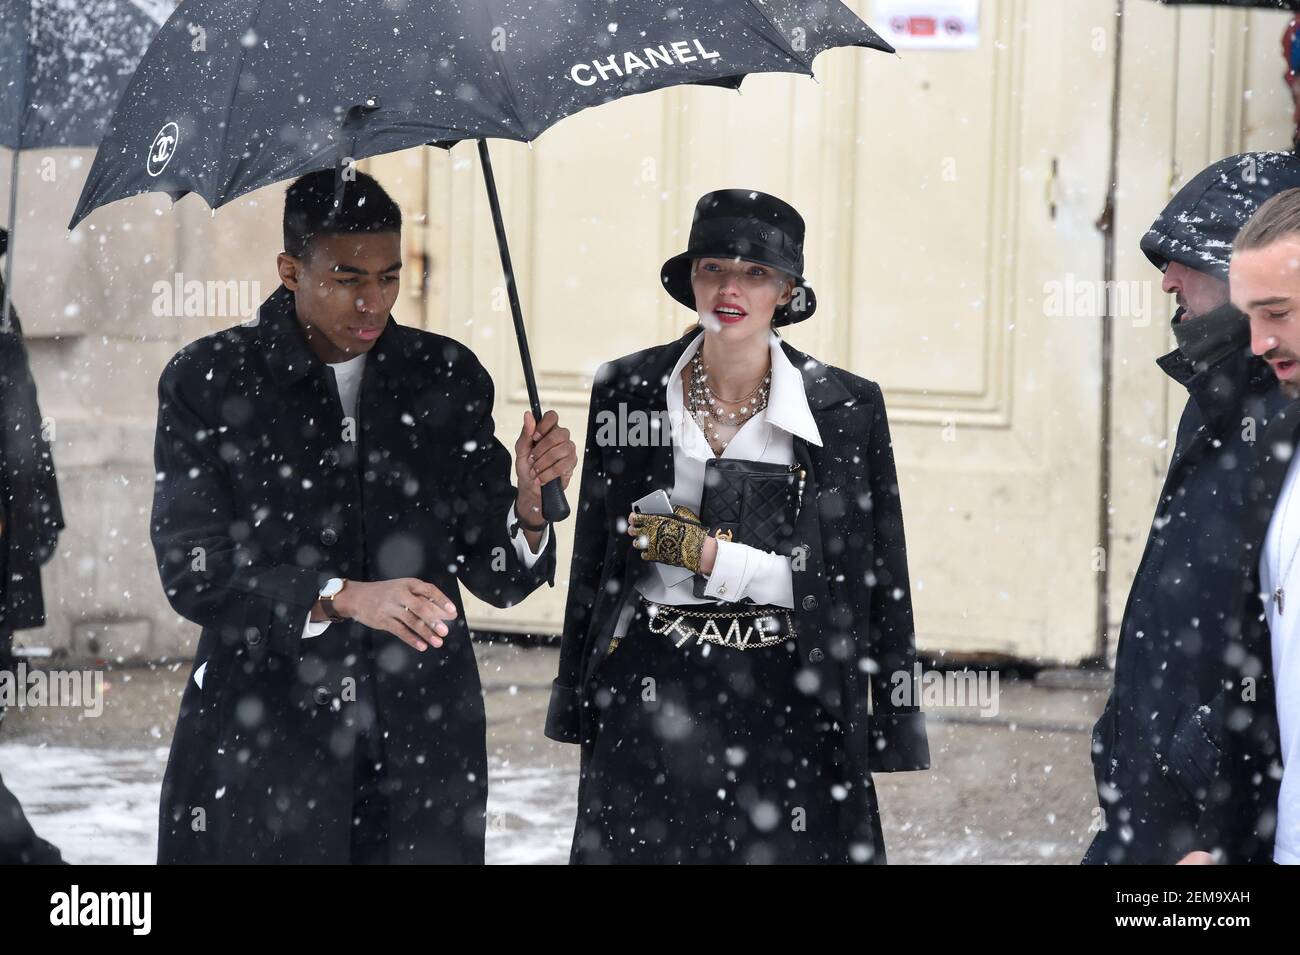 Les celebrites arrivent au defile Chanel au Grand Palais lors de la Fashion  Week Haute Couture collection printemps/ete 2019 de Paris Celebs attending  the Chanel Spring Summer 2019 show as part of